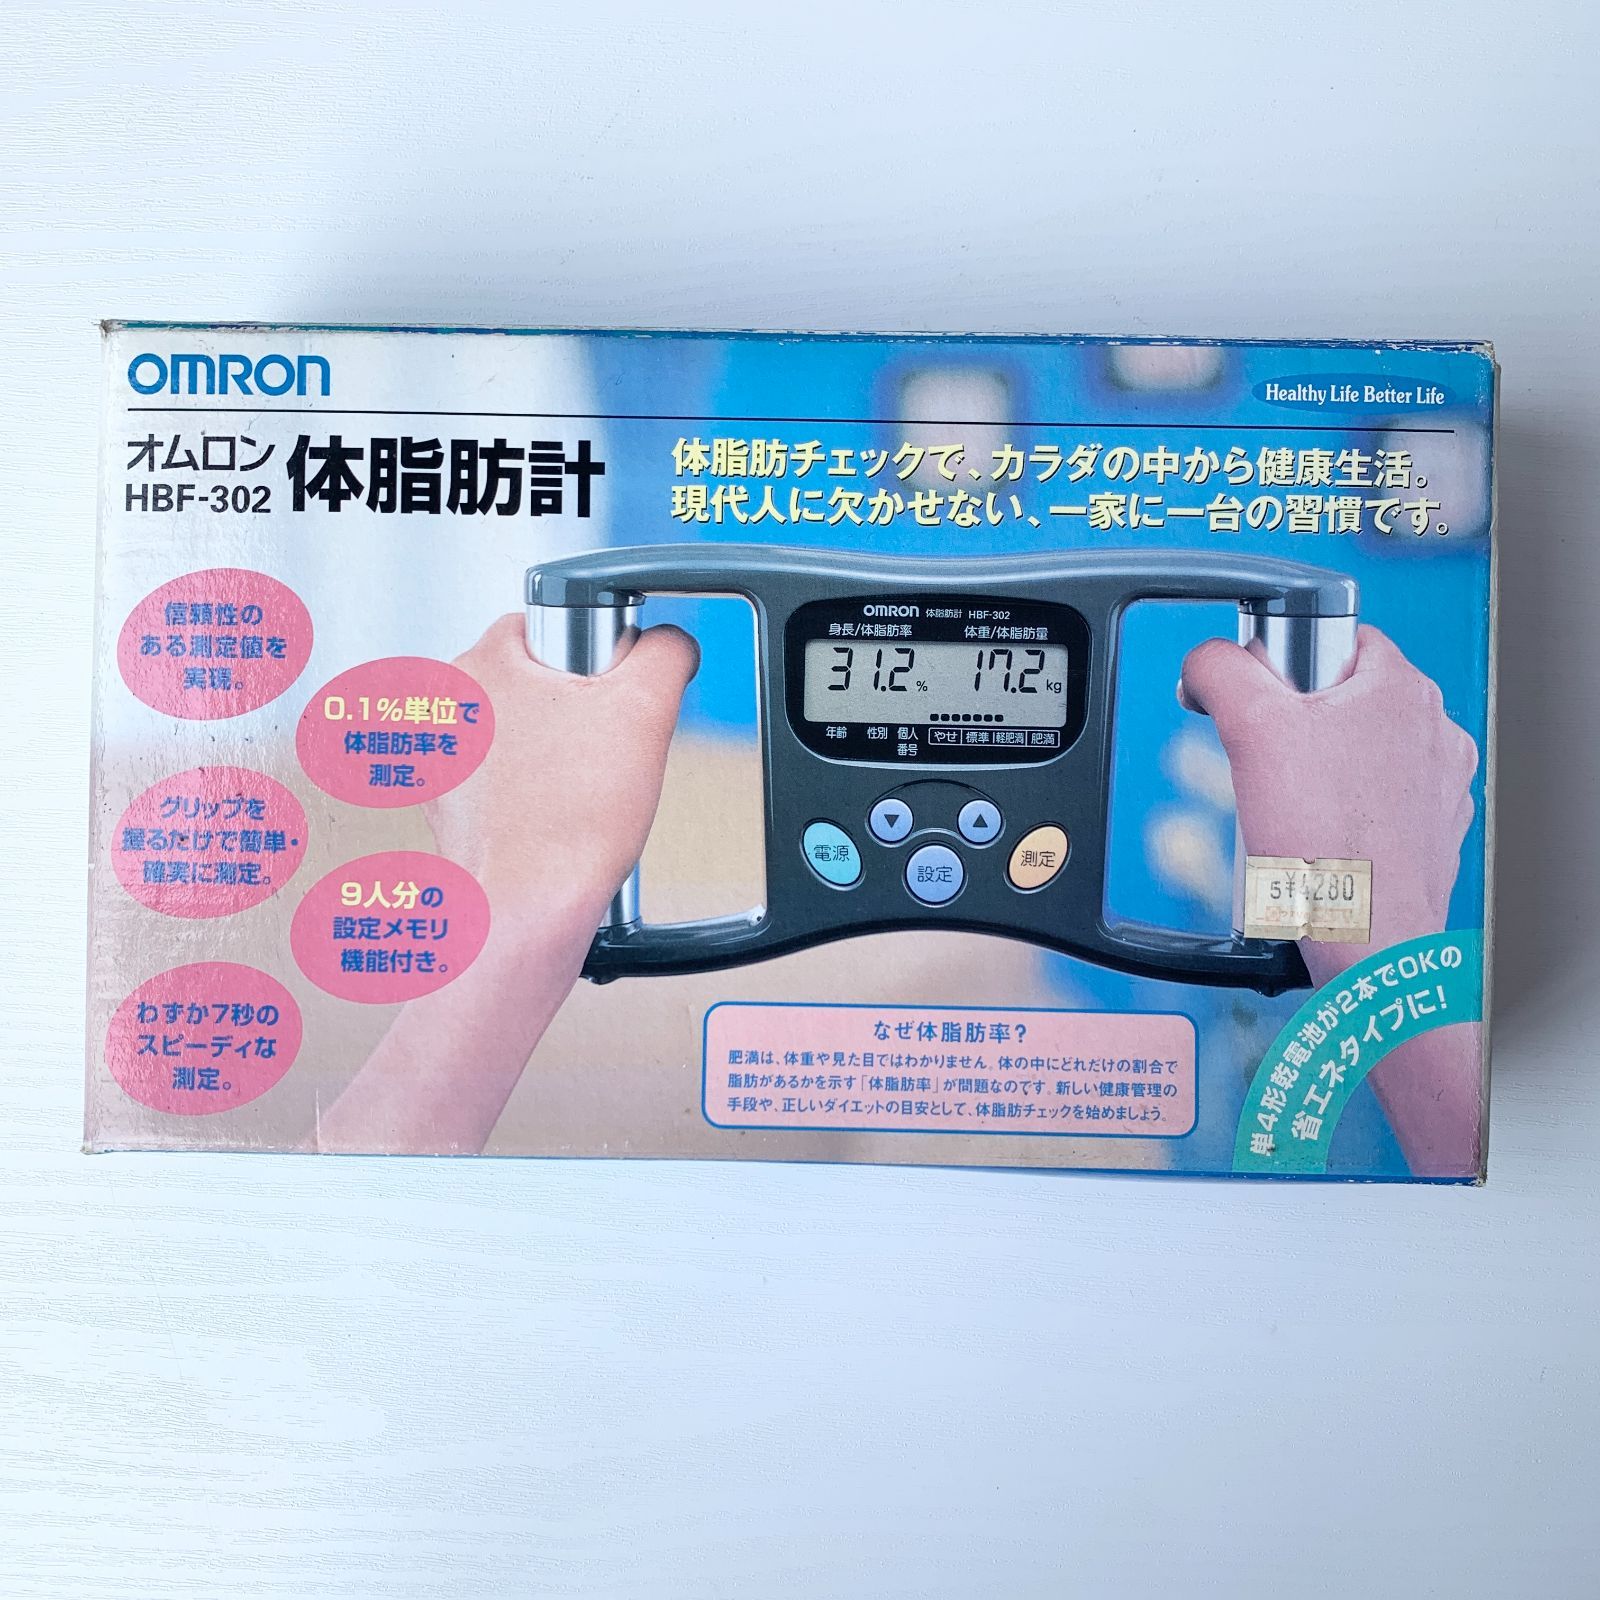 オムロン omron HBF-302 体脂肪計 健康管理 単4電池式 加茂市・田上町消防衛生保育組合 メルカリ